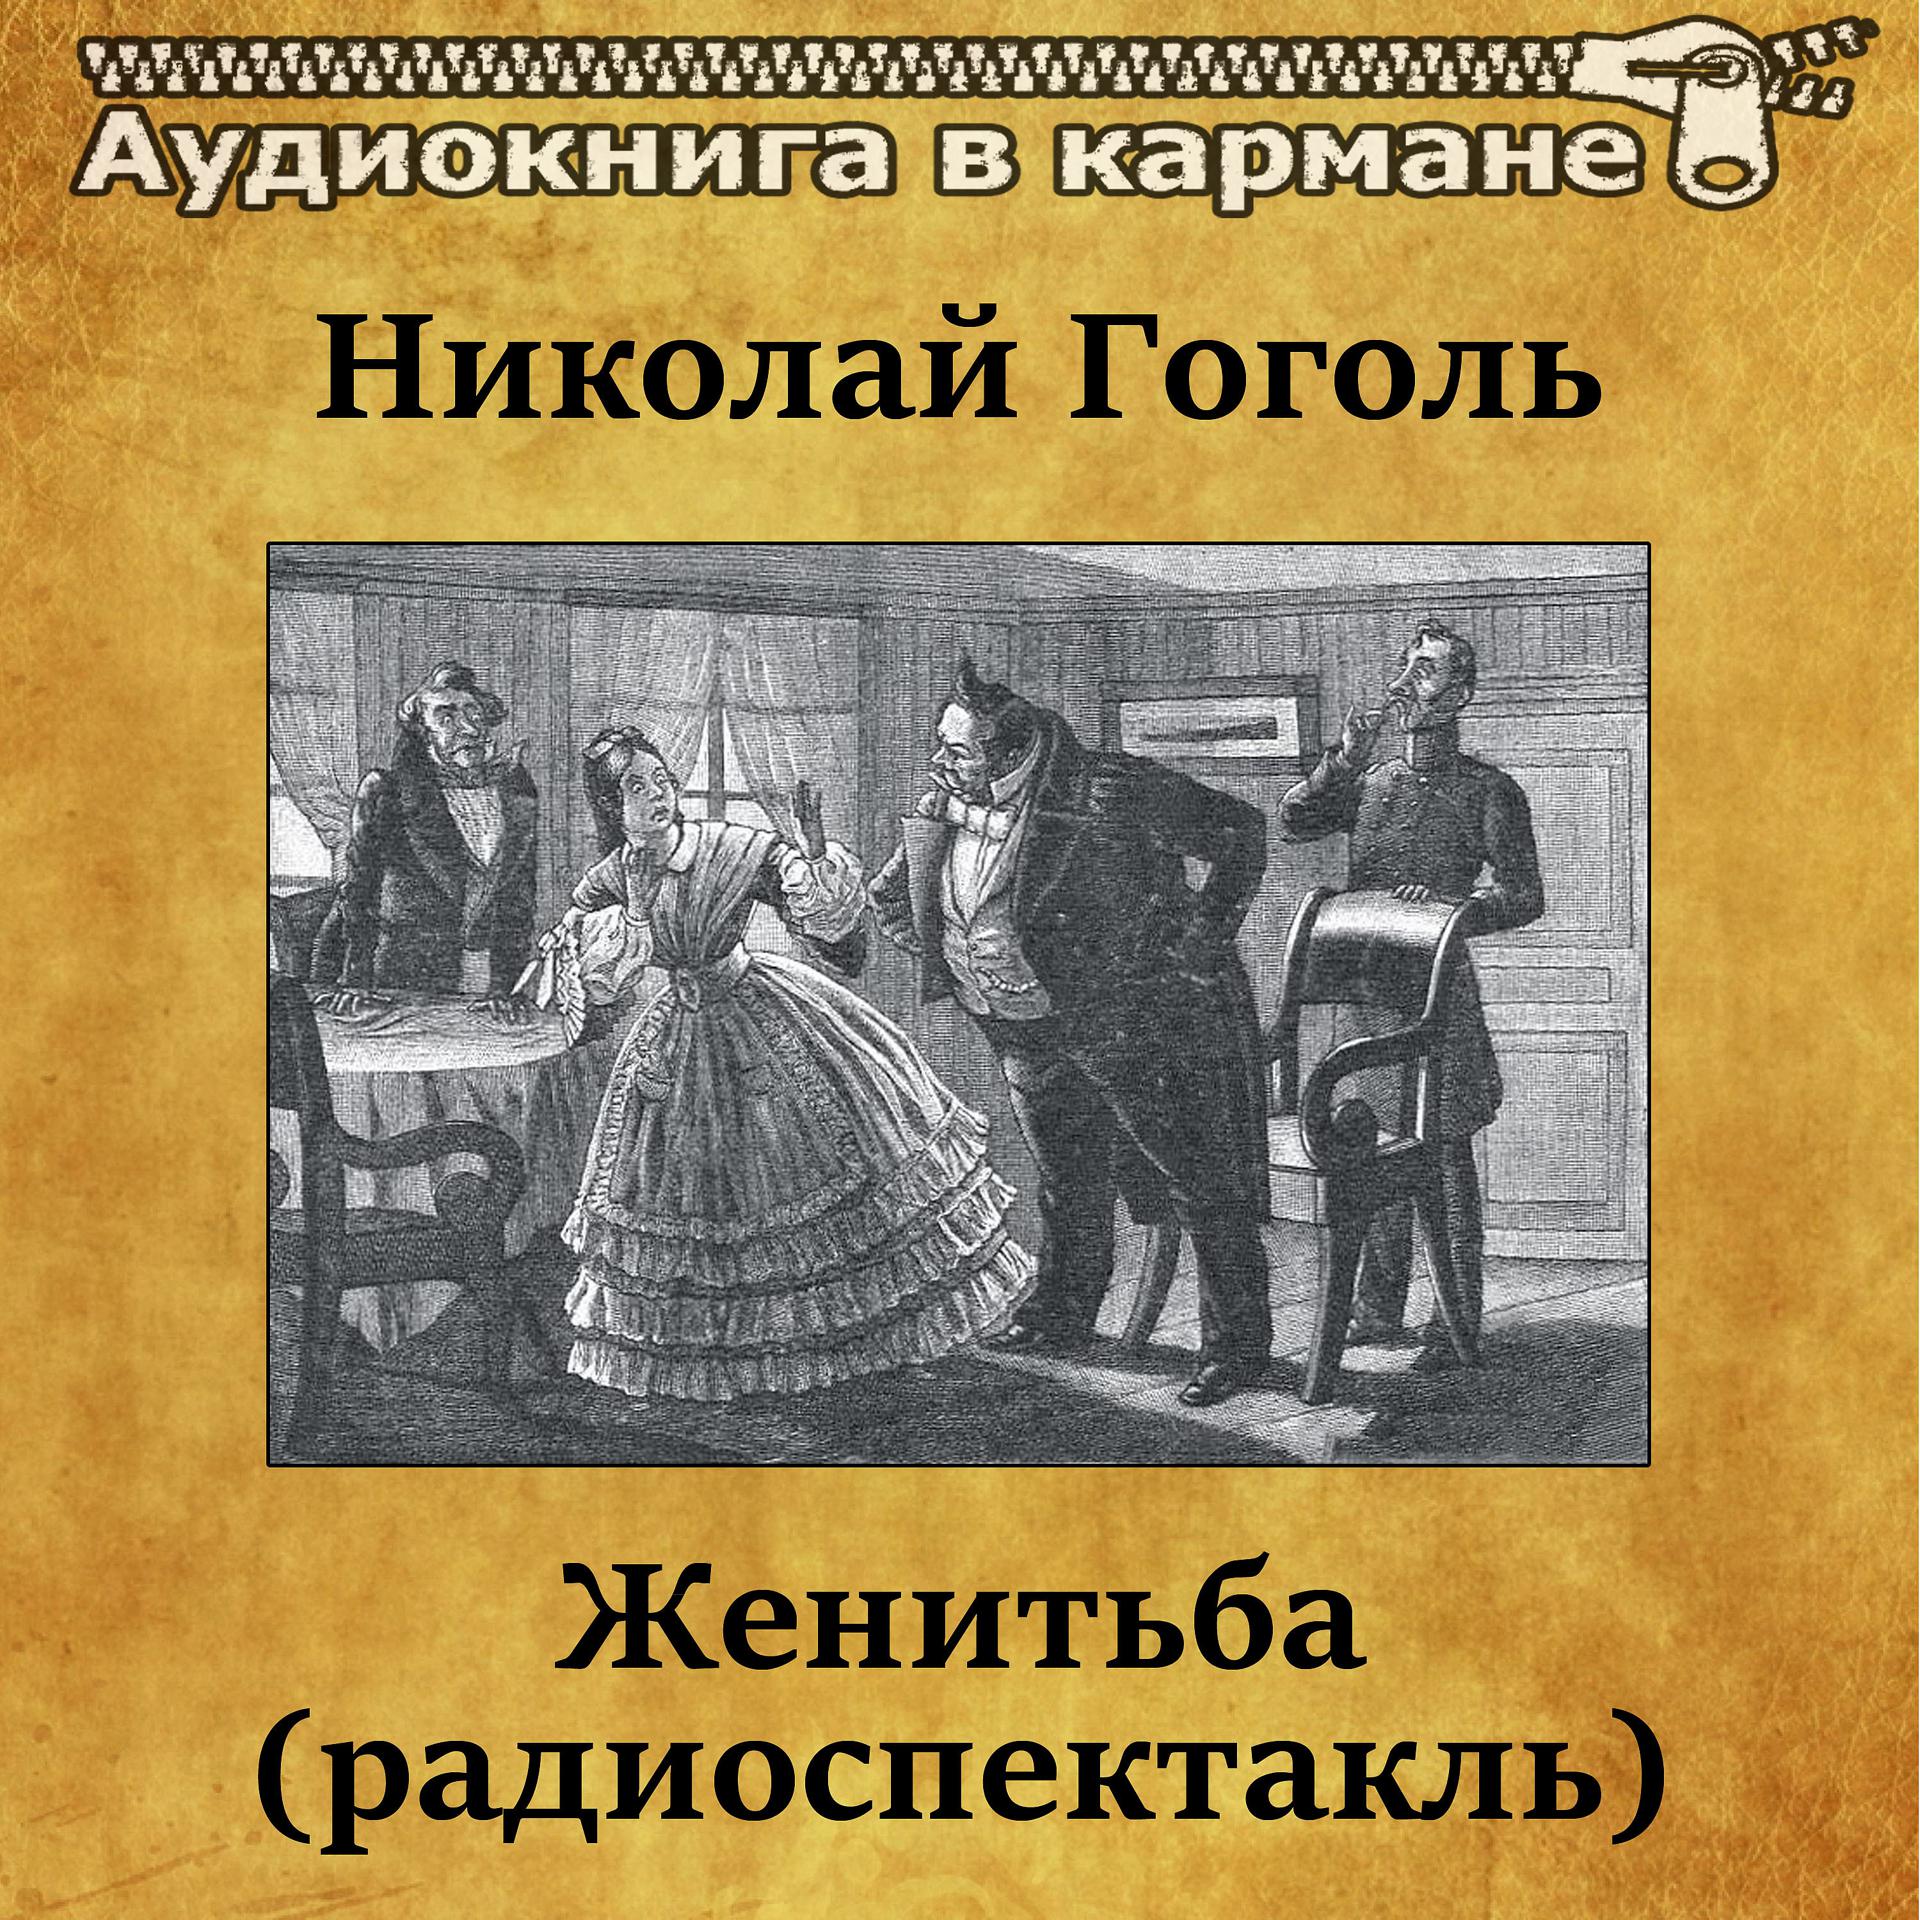 Постер к треку Аудиокнига в кармане, Лев Дуров - Женитьба, Чт. 5